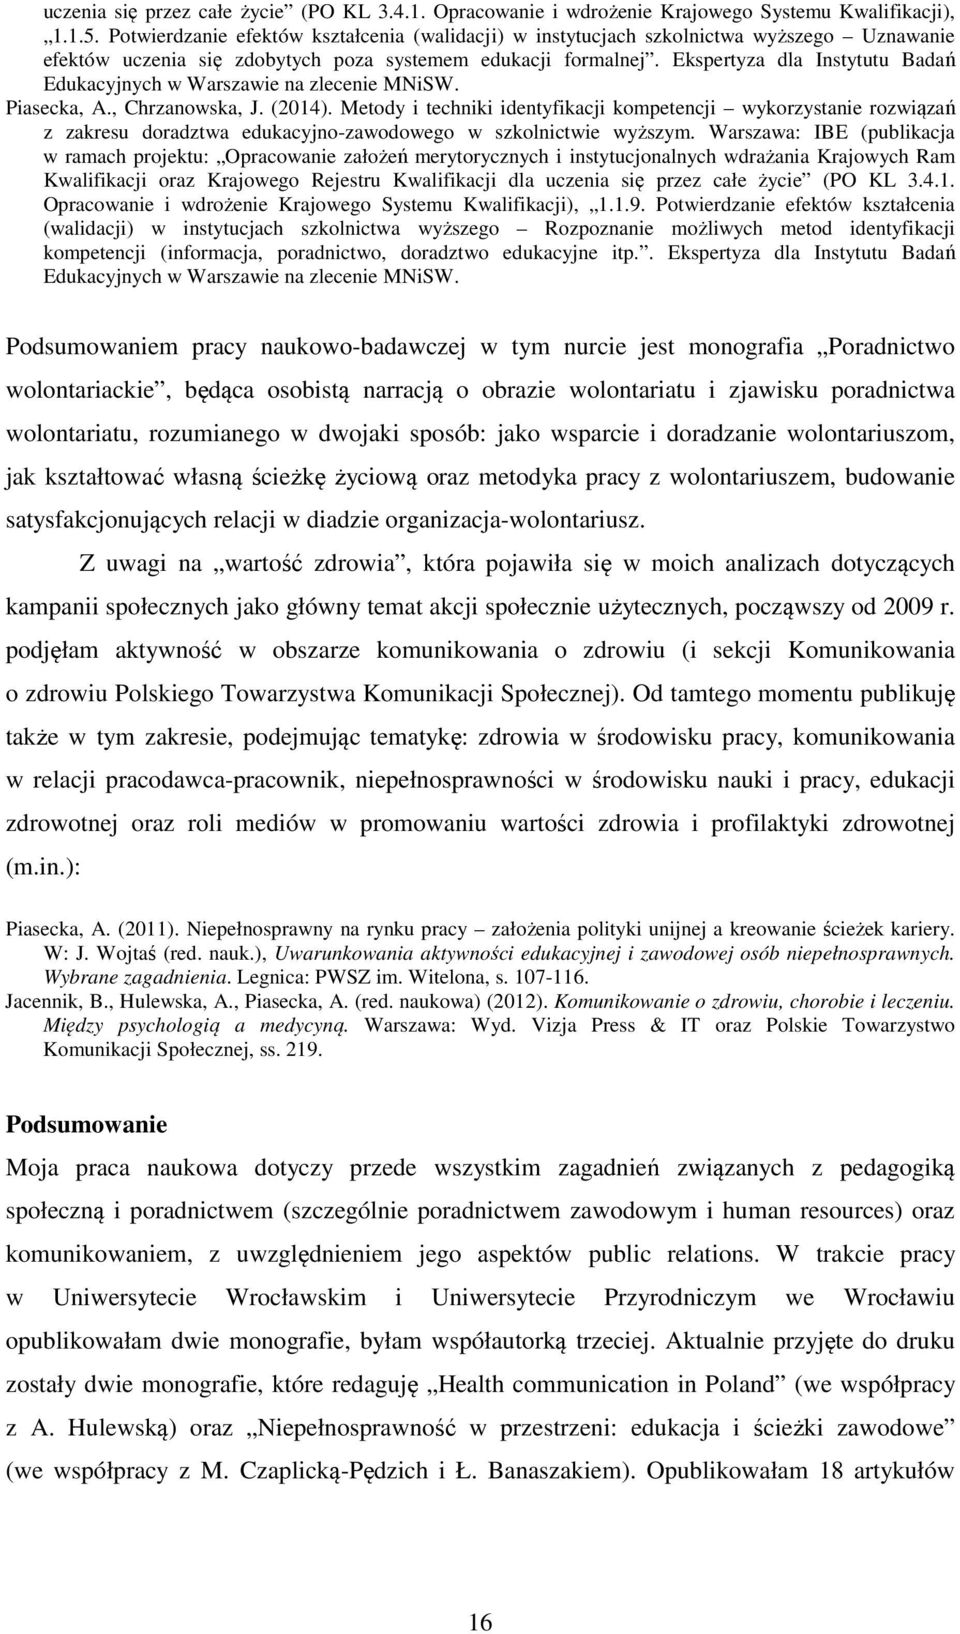 Ekspertyza dla Instytutu Badań Edukacyjnych w Warszawie na zlecenie MNiSW. Piasecka, A., Chrzanowska, J. (2014).